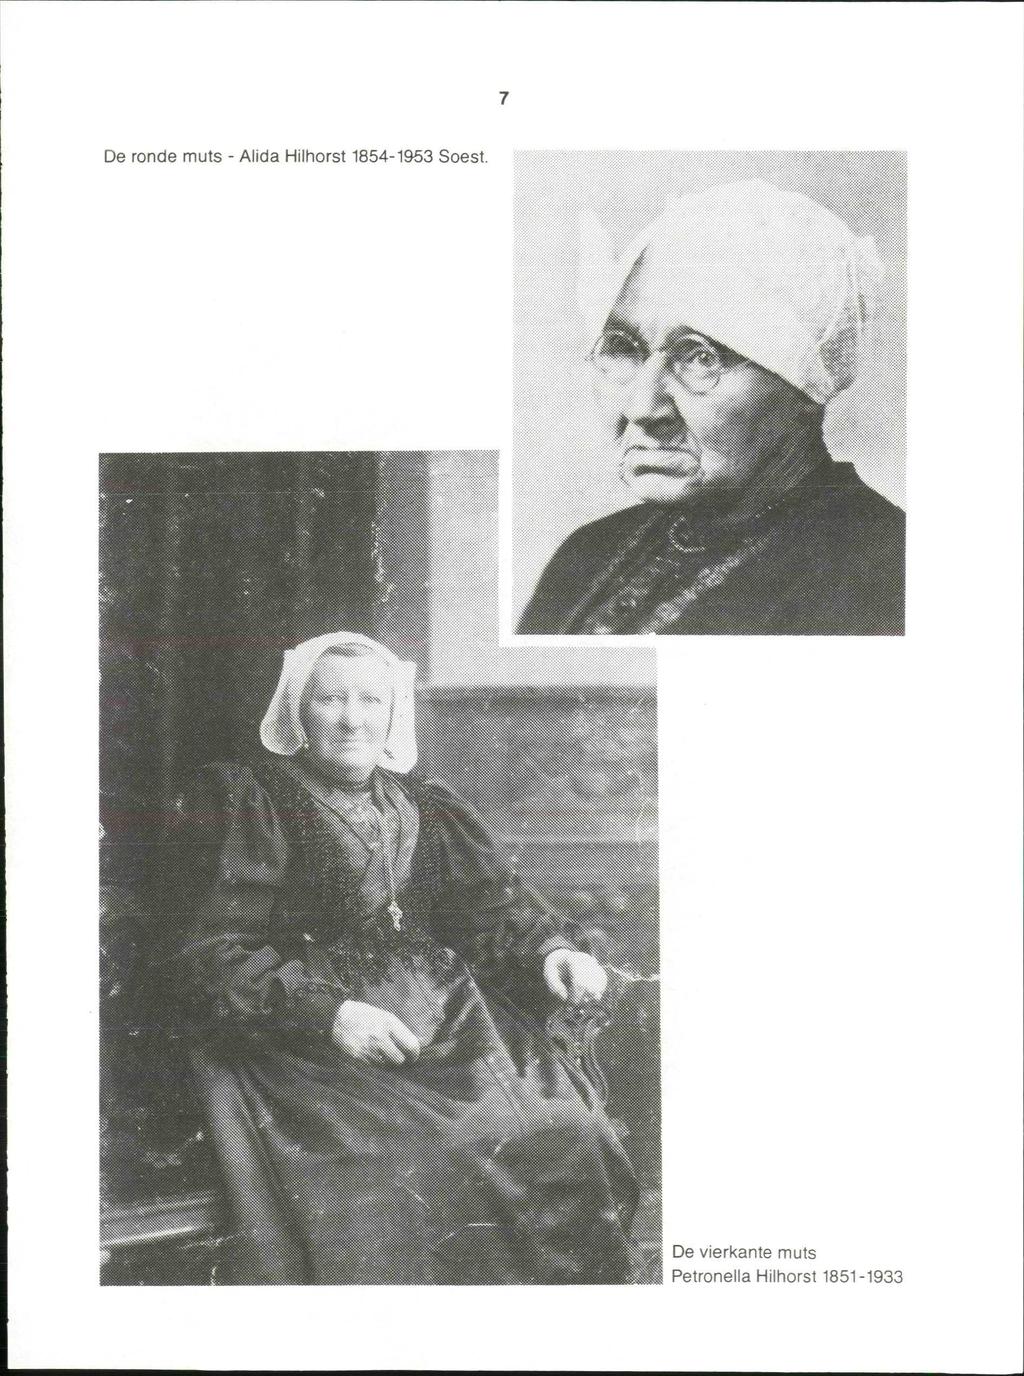 De ronde muts - Alida Hilhorst 1854-1953 Soest.